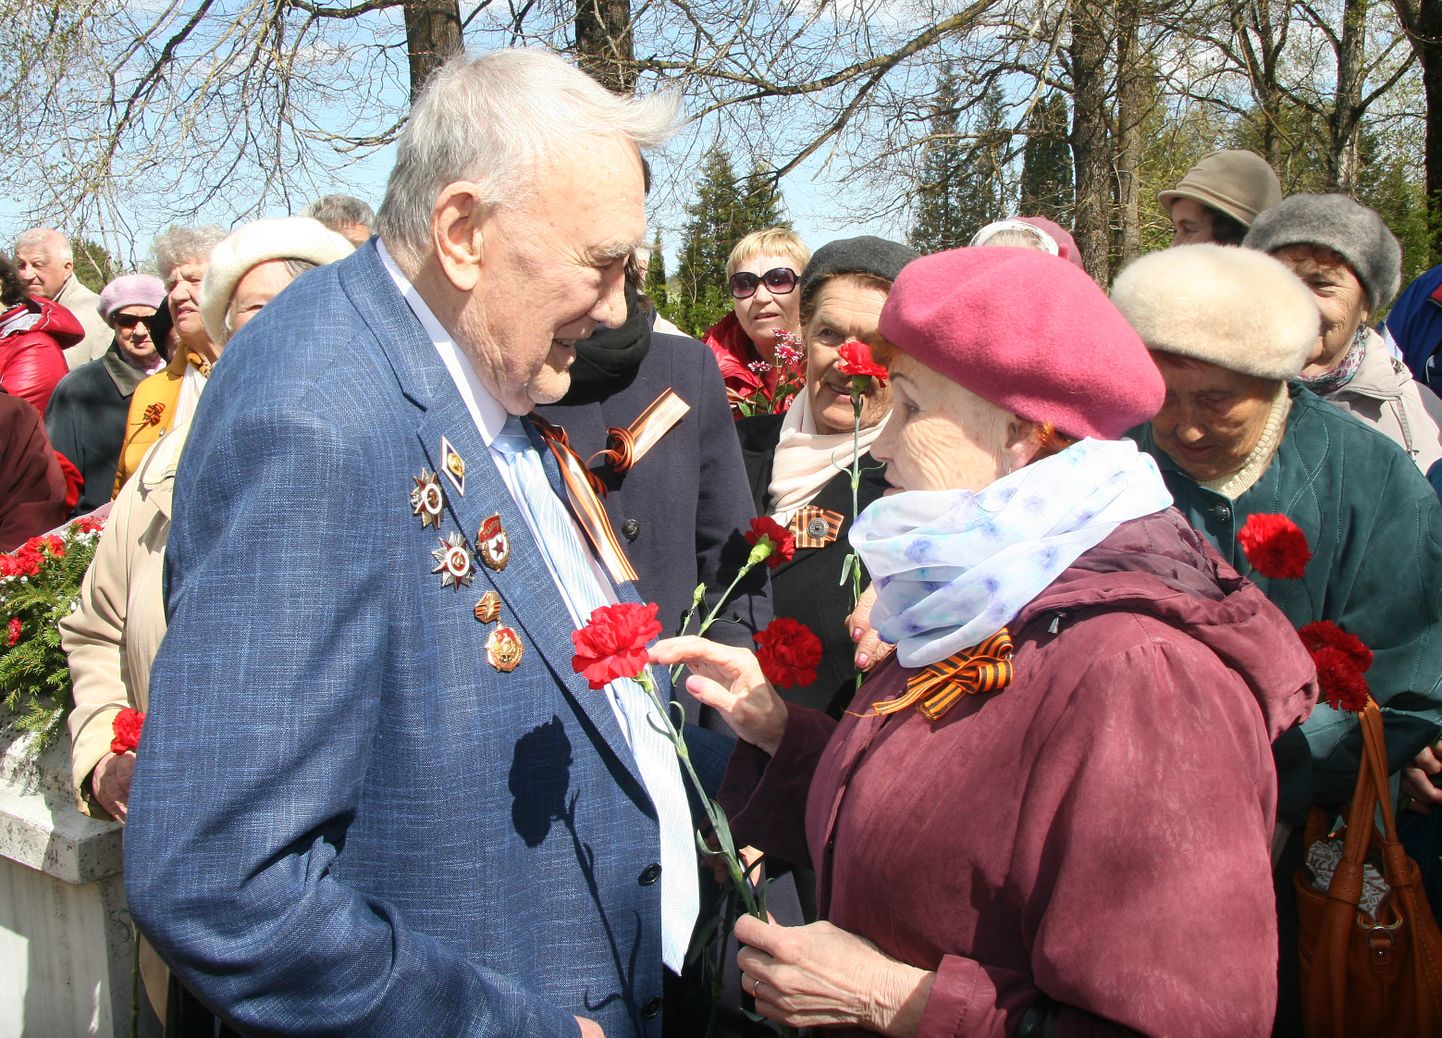 На памятной церемонии в Йыхви 95-летнему ветерану Виктору Ивановичу Степанову досталось особенно много внимания - каждому хотелось поздравить героя и пожелать ему здоровья.